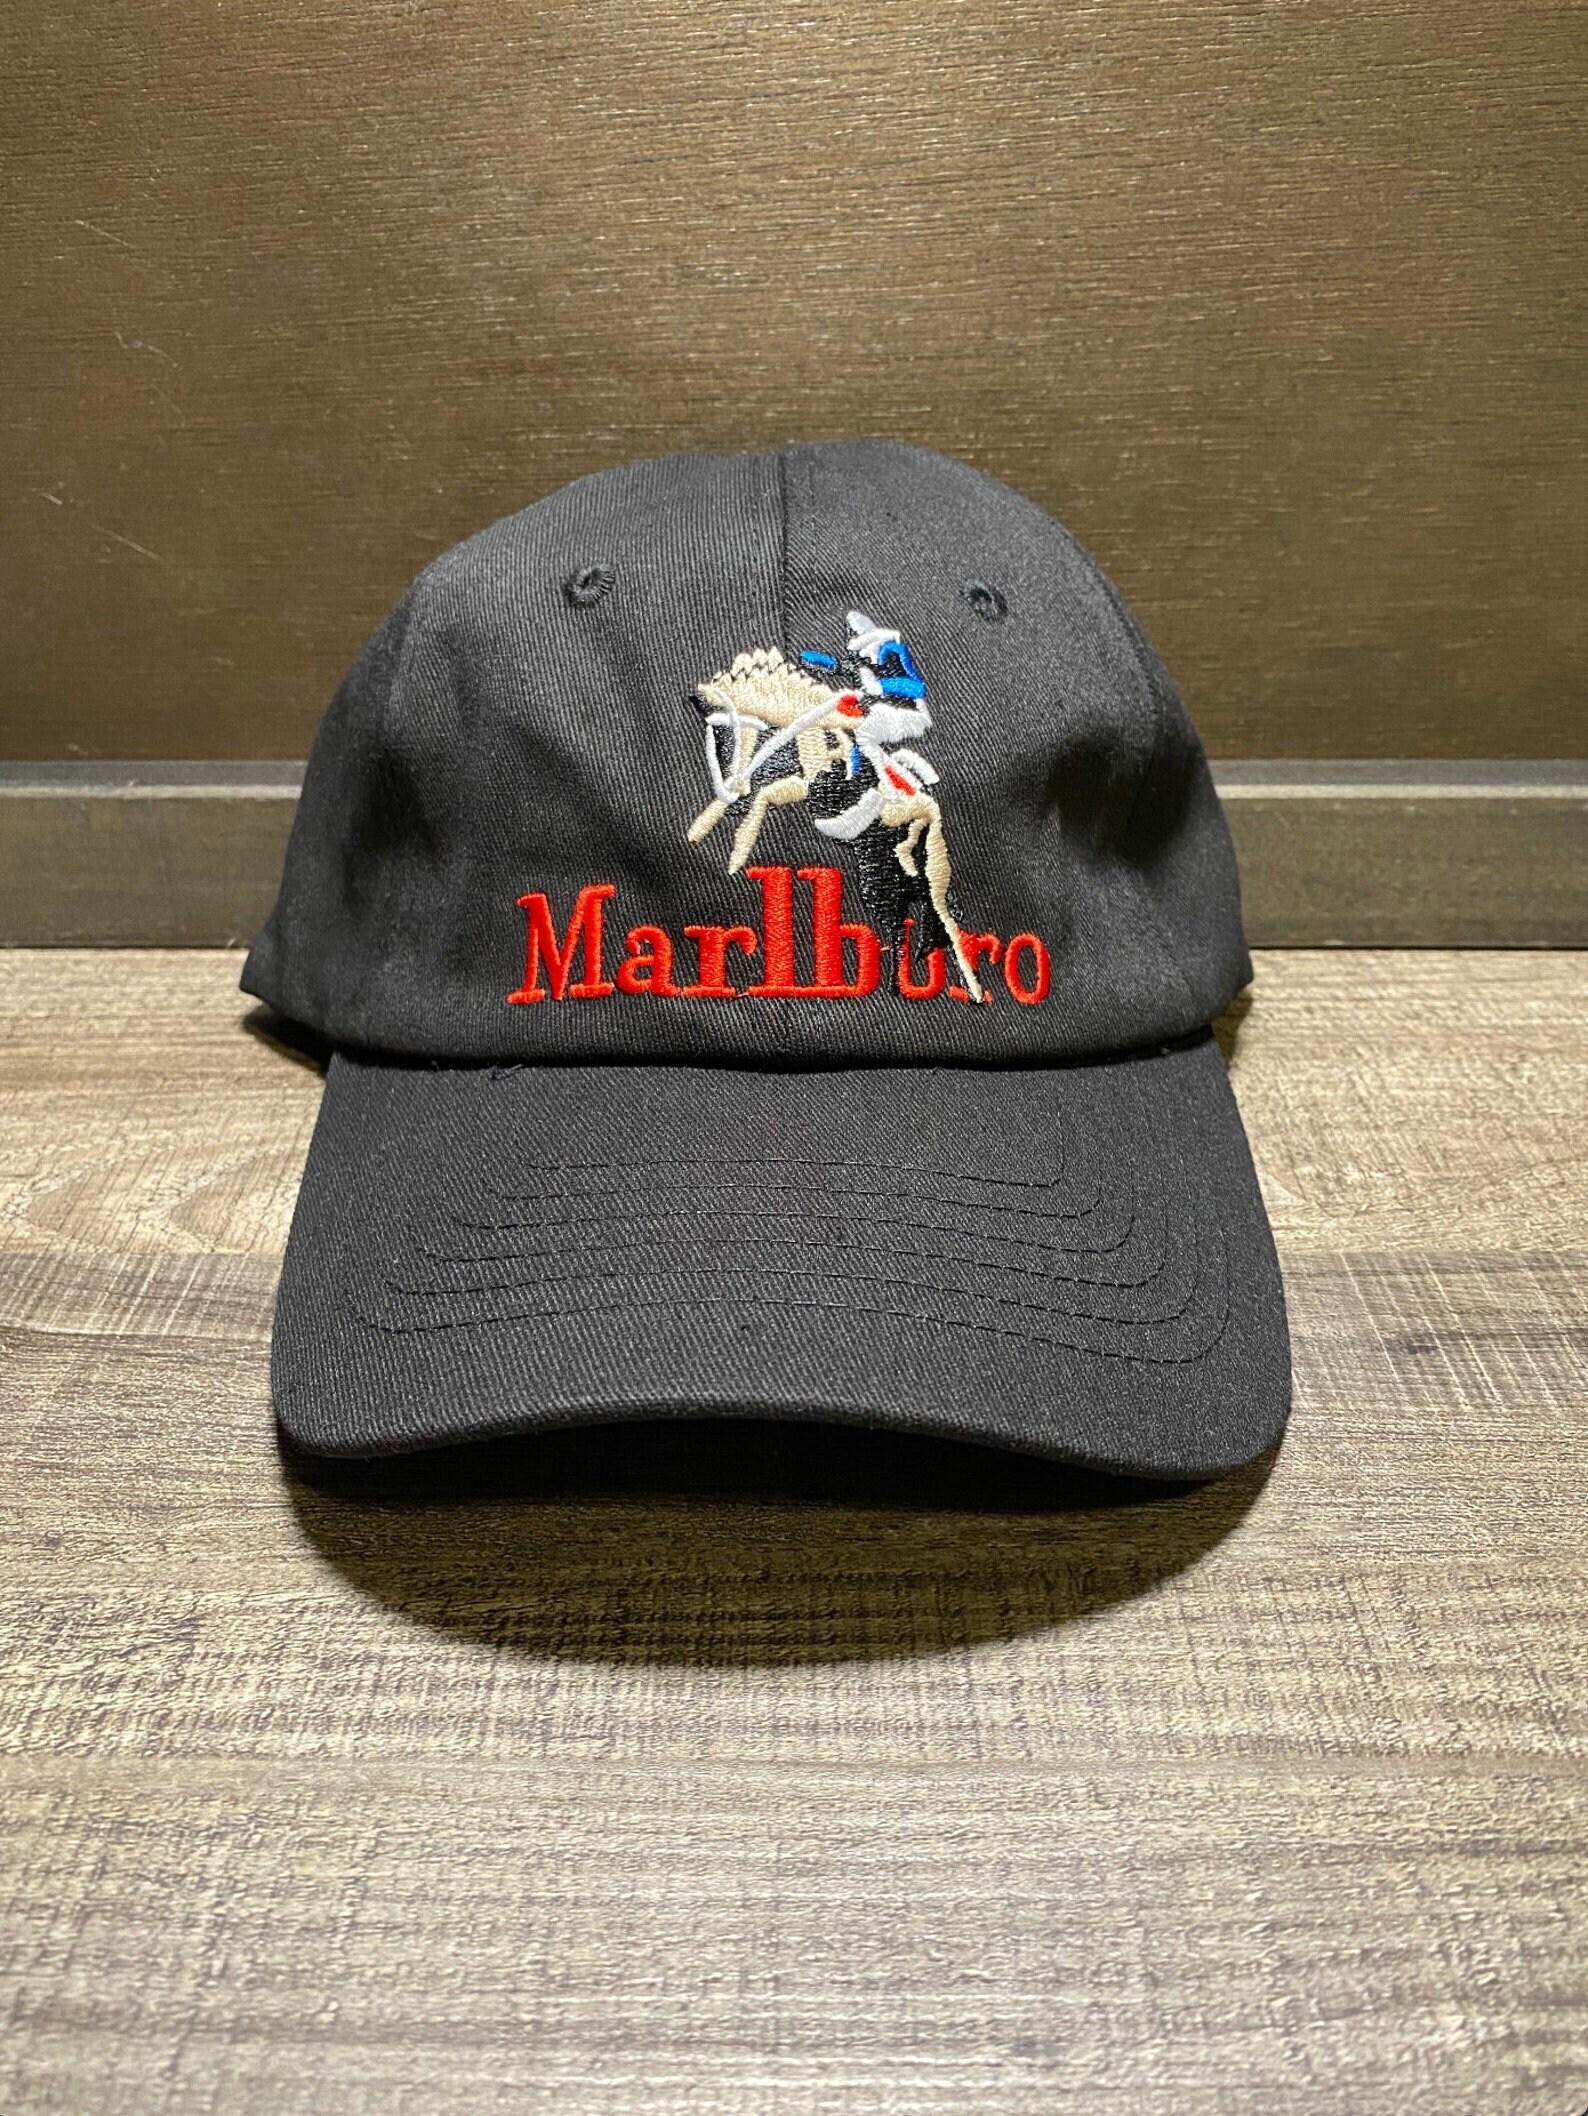 Marlboro Hat - Etsy Norway